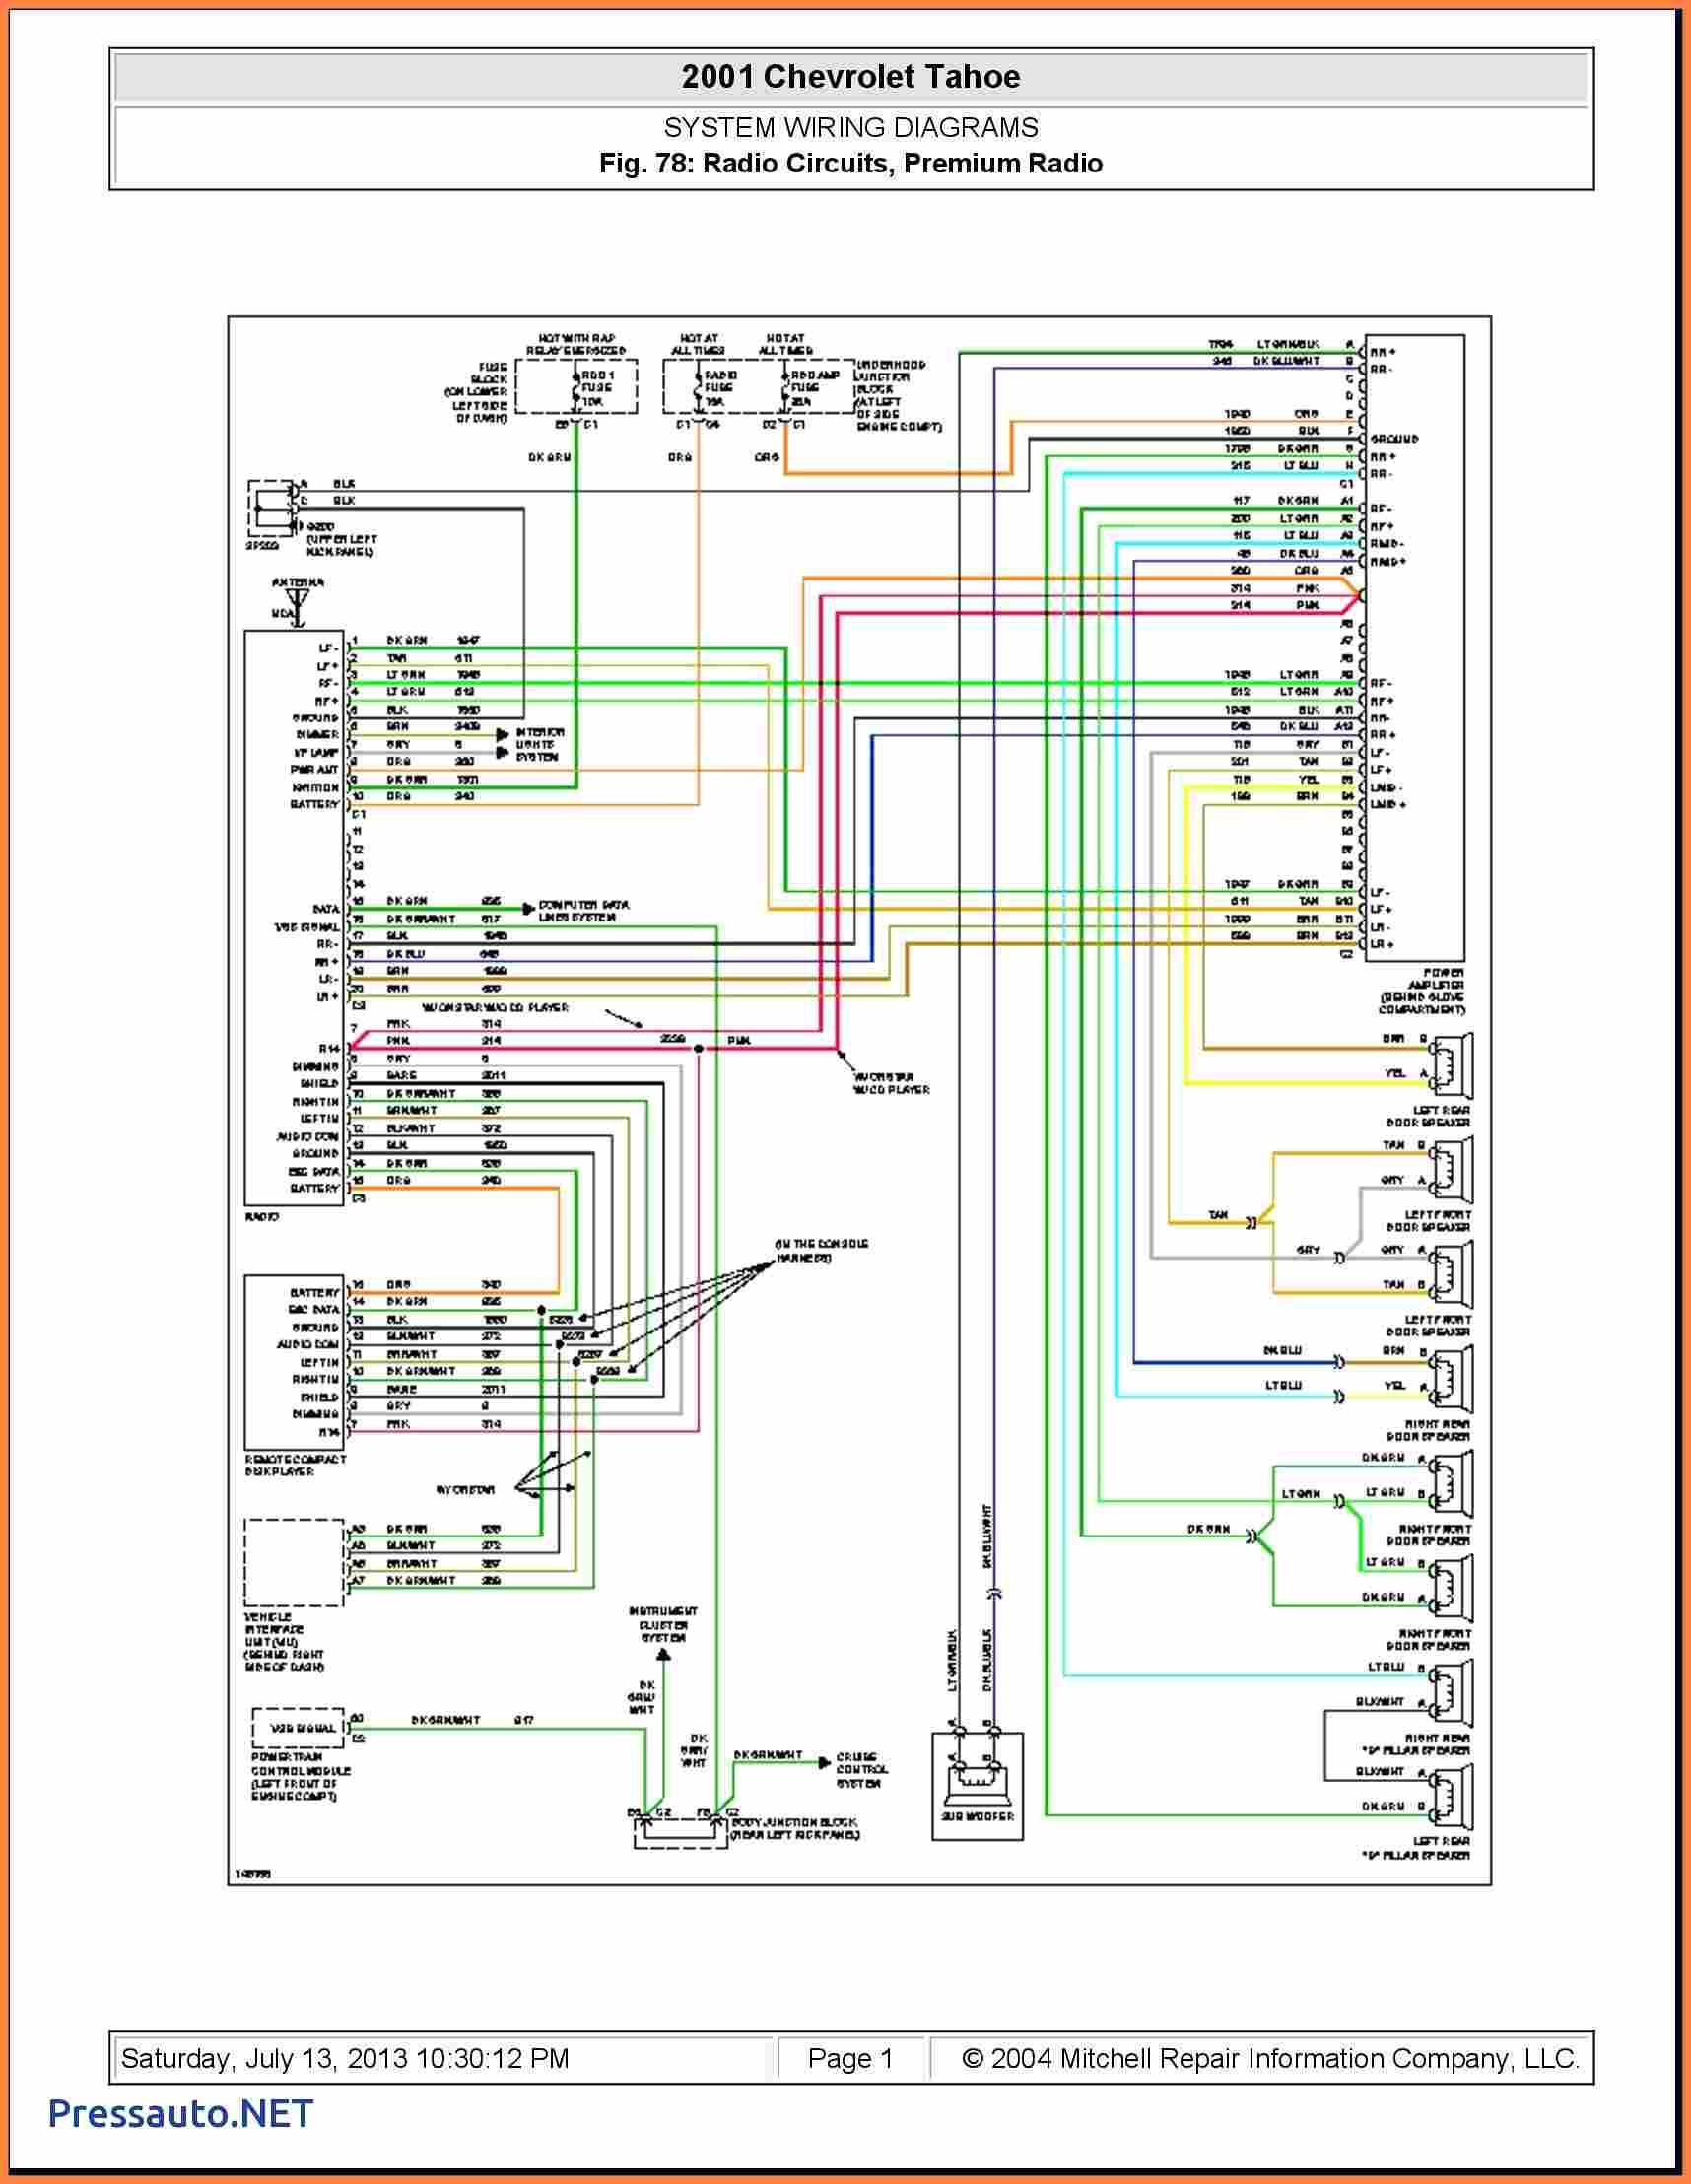 2002 Chevy Trailblazer Wiring Diagram from mainetreasurechest.com